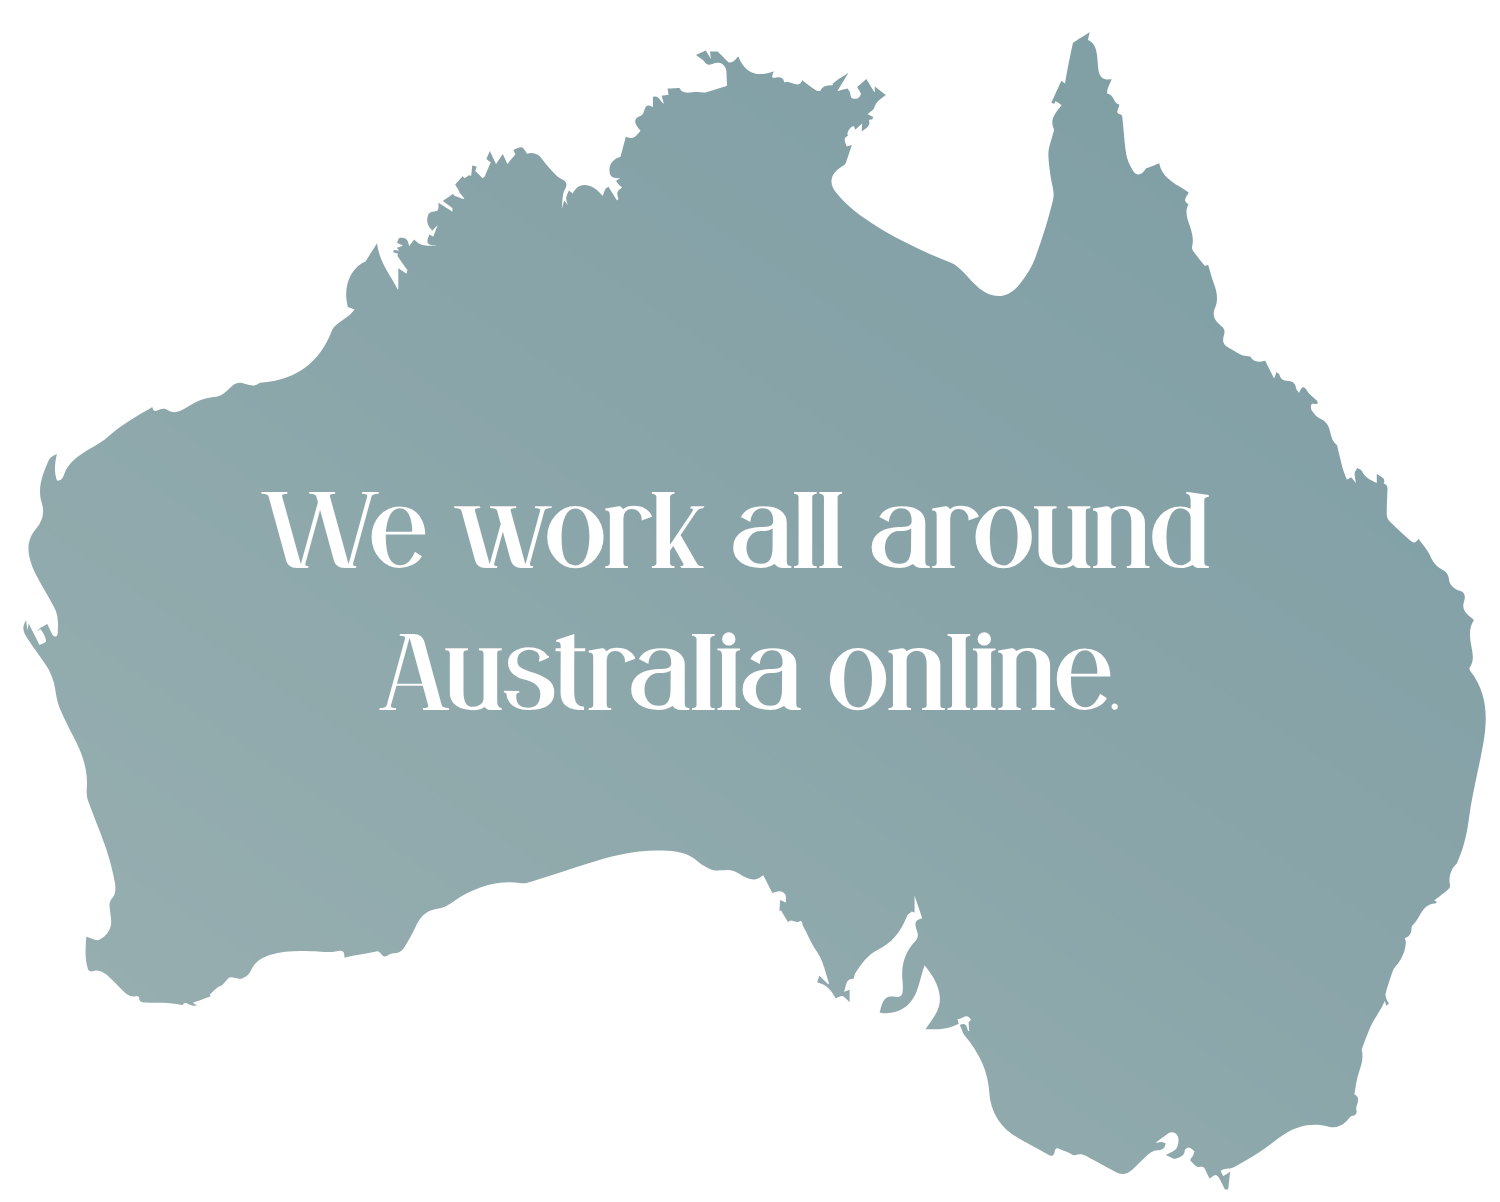 We work all around Australia online.